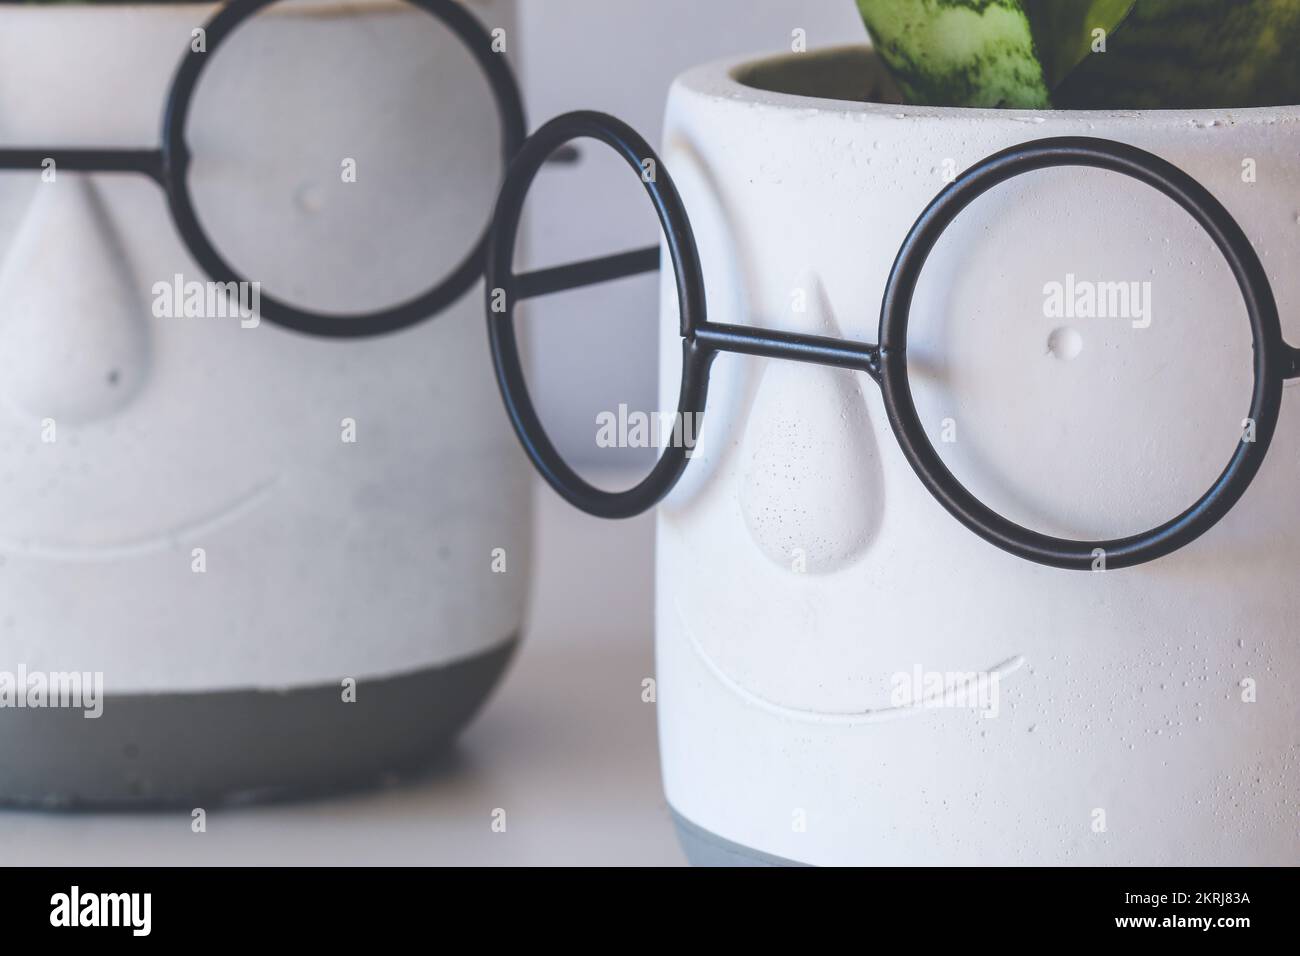 Nahaufnahme zweier weißer keramischer Zierpflanzentopf, der ein Smiley-Gesicht in der Brille darstellt Stockfoto